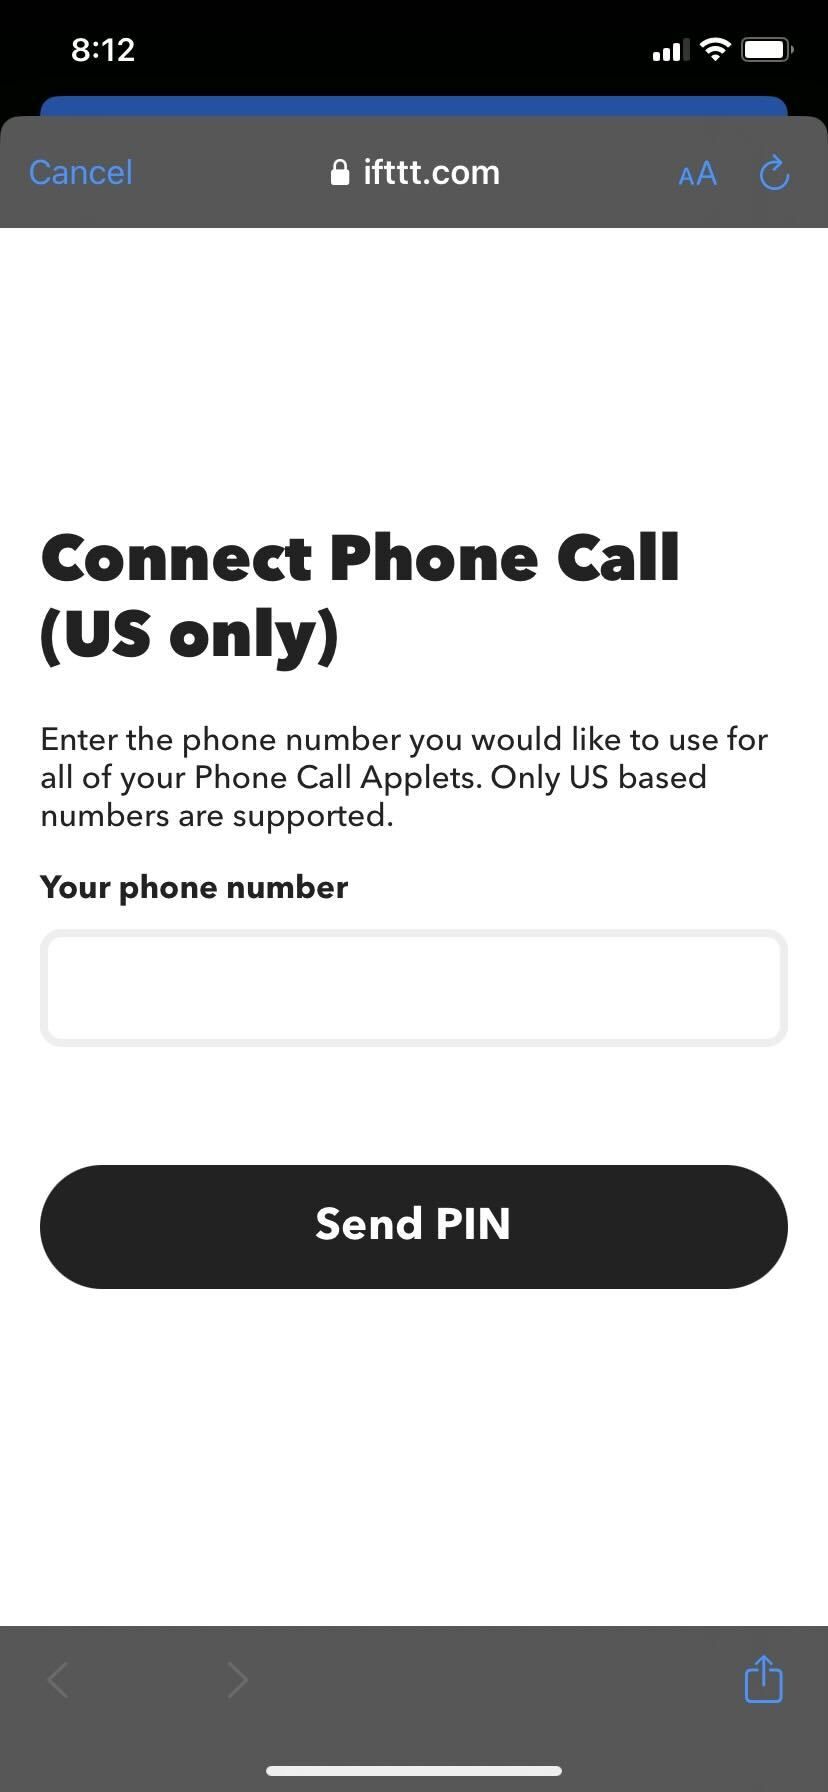 IFTTT app Send PIN button